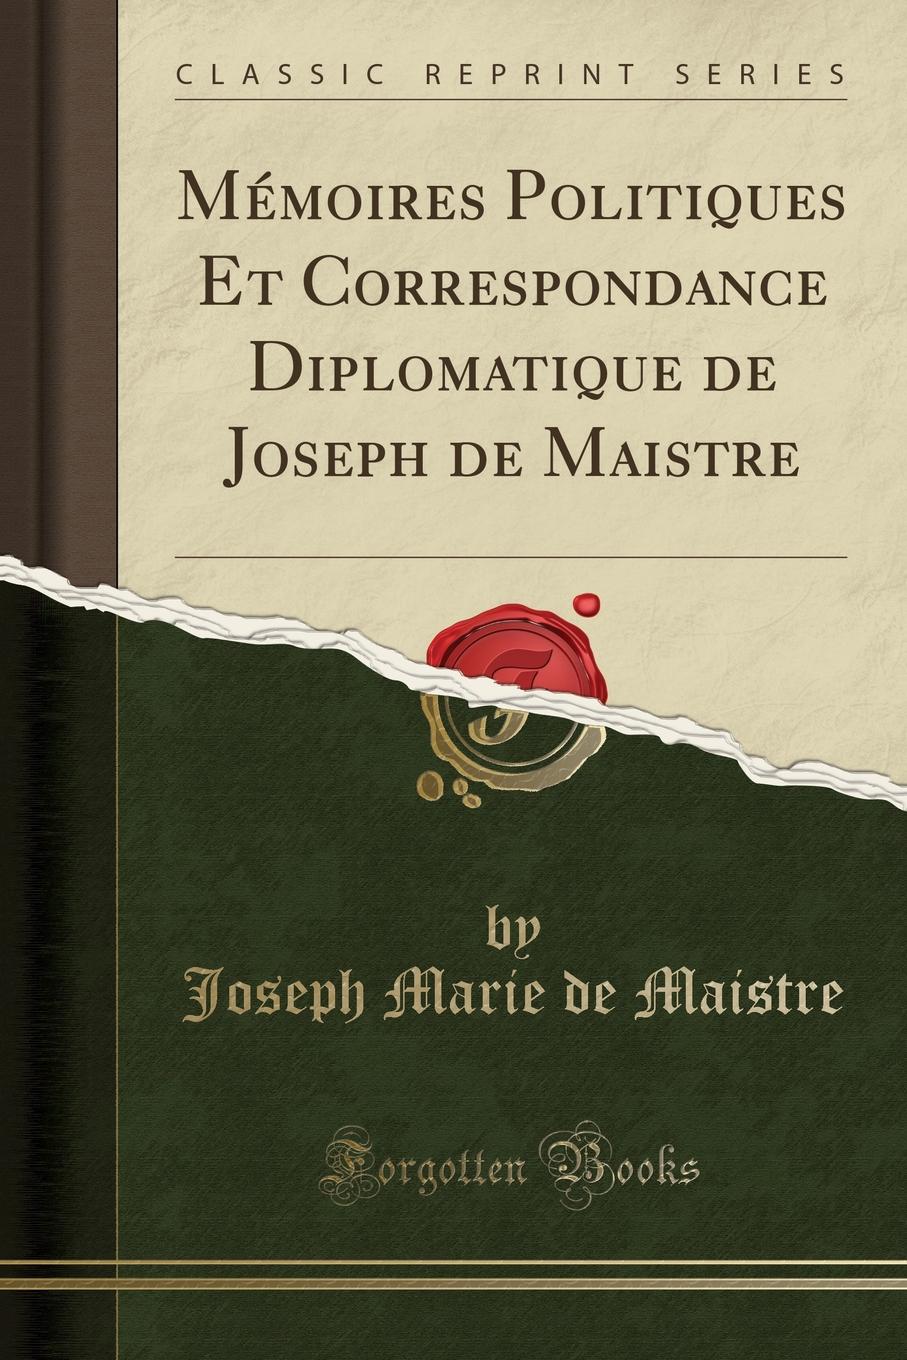 Memoires Politiques Et Correspondance Diplomatique de Joseph de Maistre (Classic Reprint)